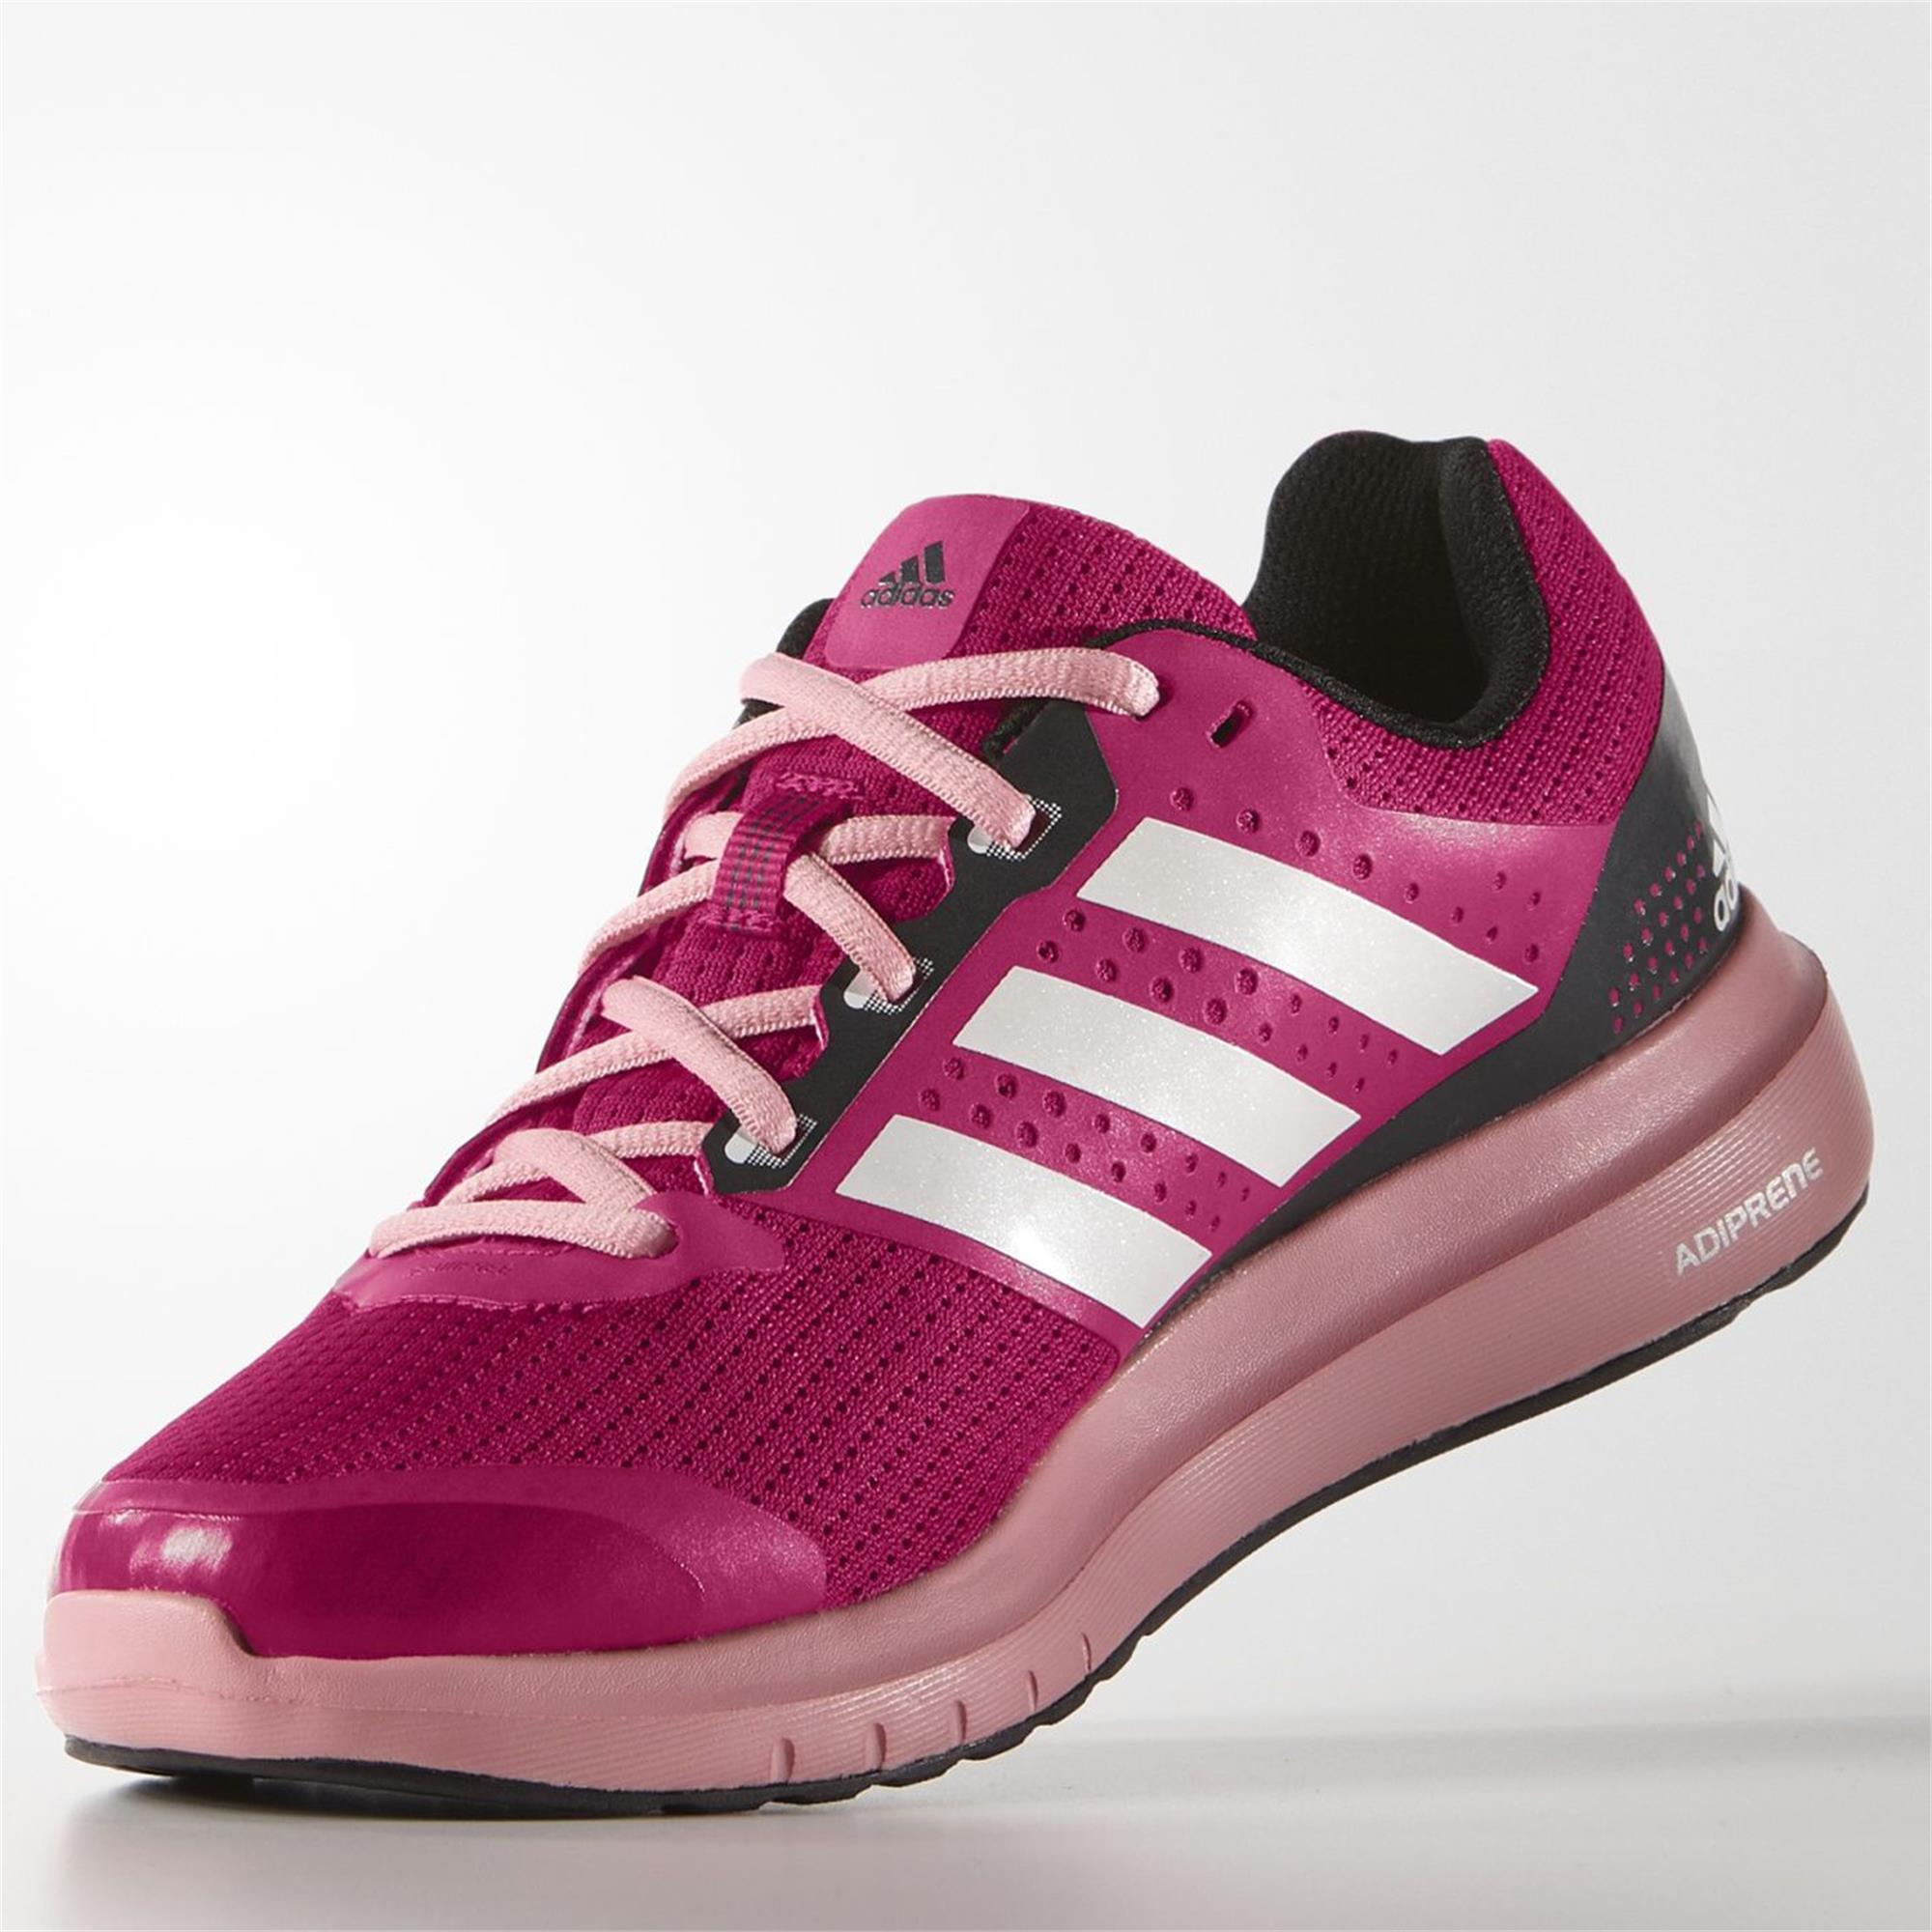 adidas Duramo 7 W Bayan Koşu Ayakkabısı Ürün kodu: B33561 | Etichet Sport